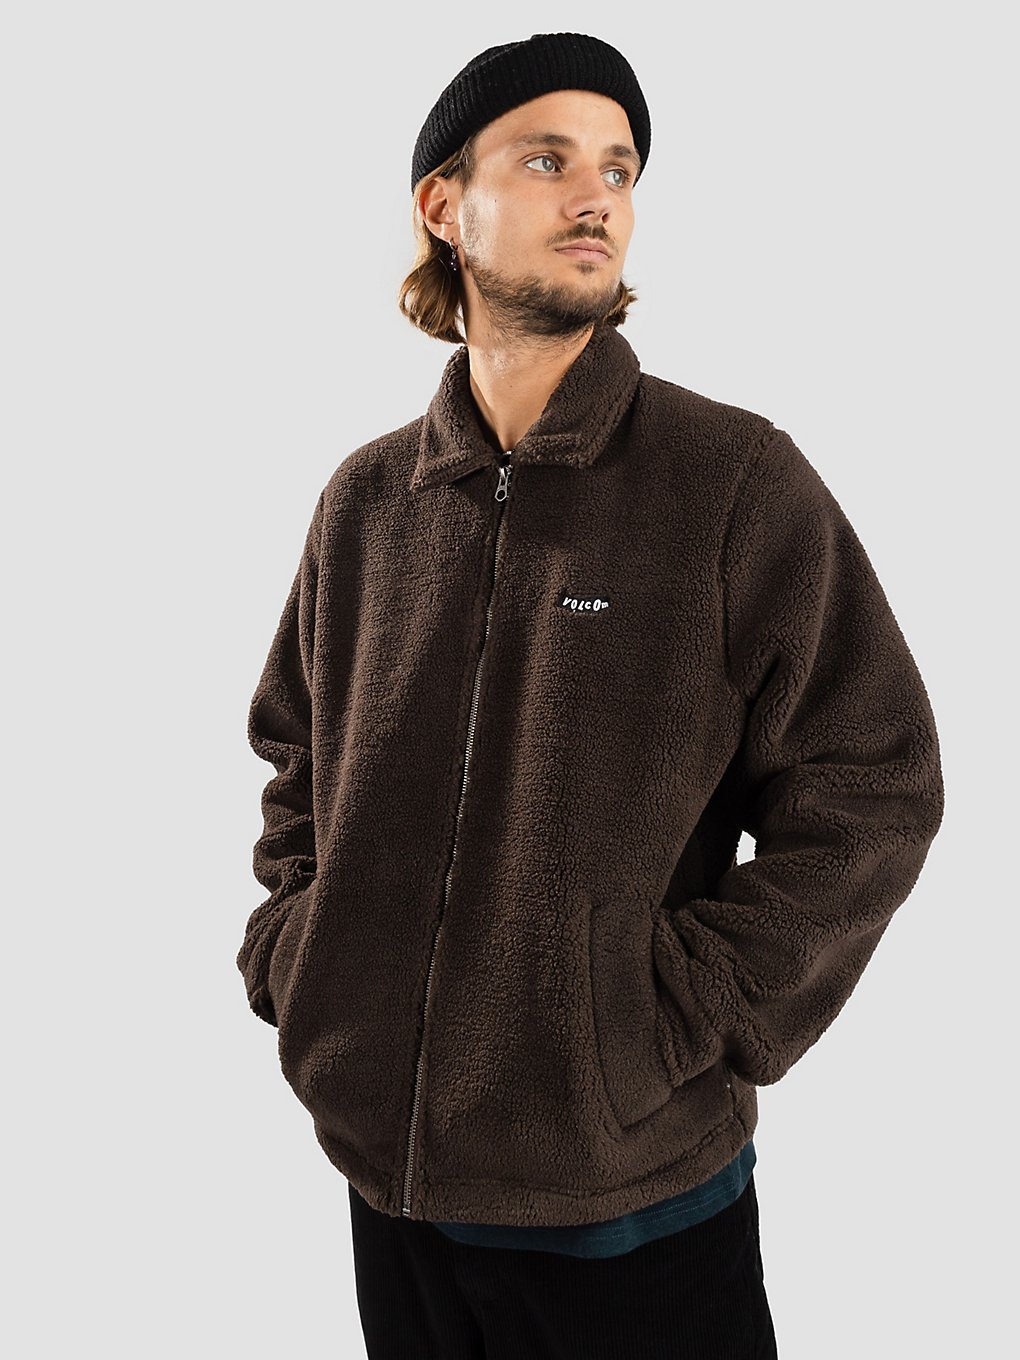 Volcom Edwart Sherpa Lined Jacke dark brown kaufen